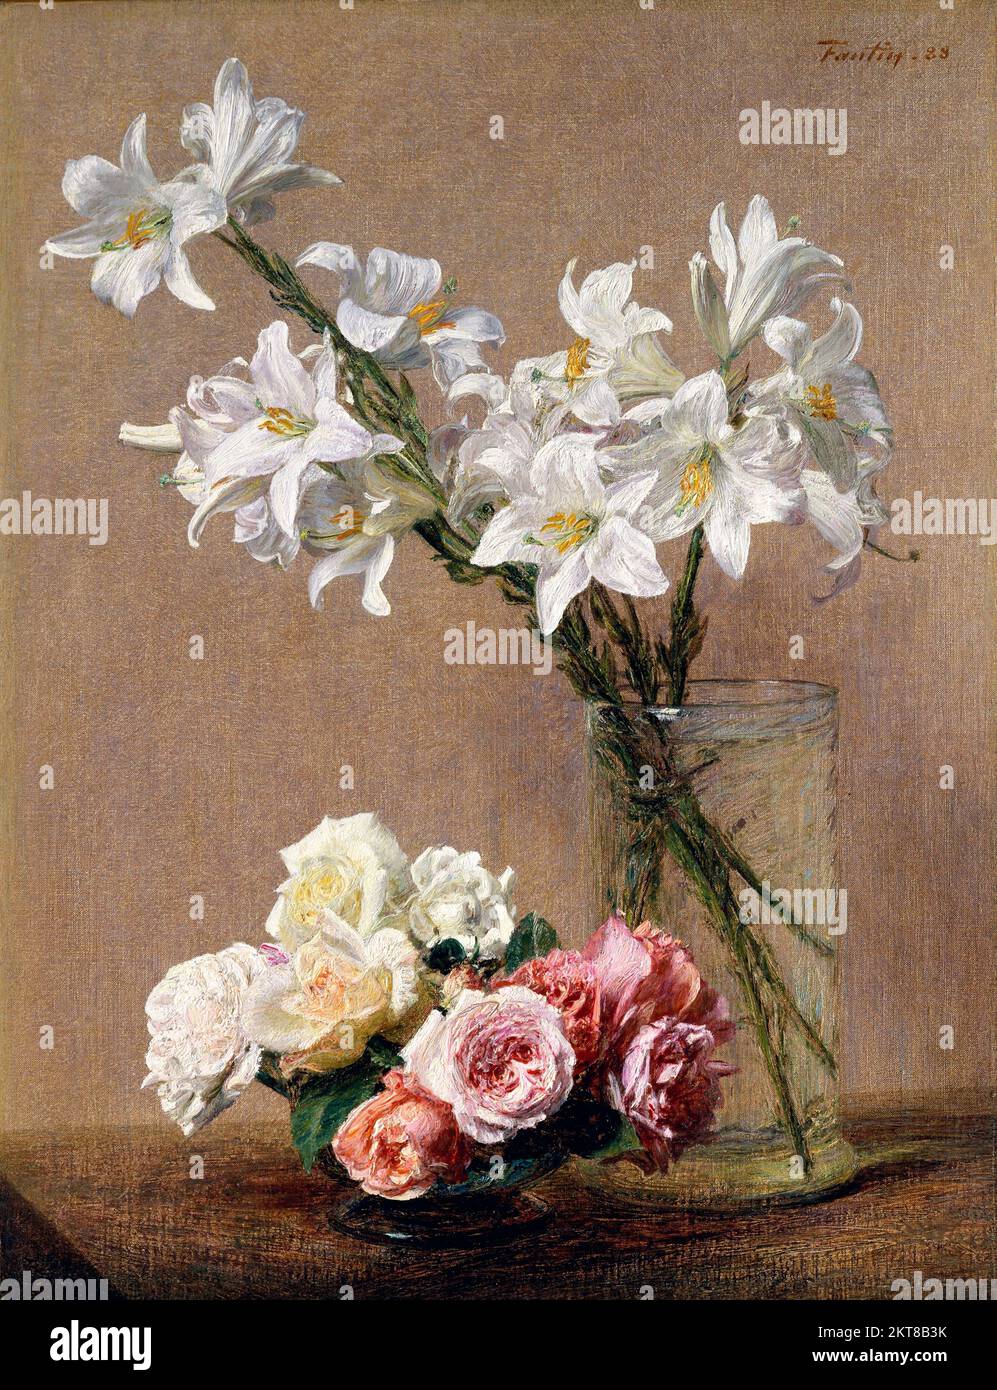 Roses et lilas d'Henri Fantin-Latour (1836-1904), huile sur toile, 1888 Banque D'Images